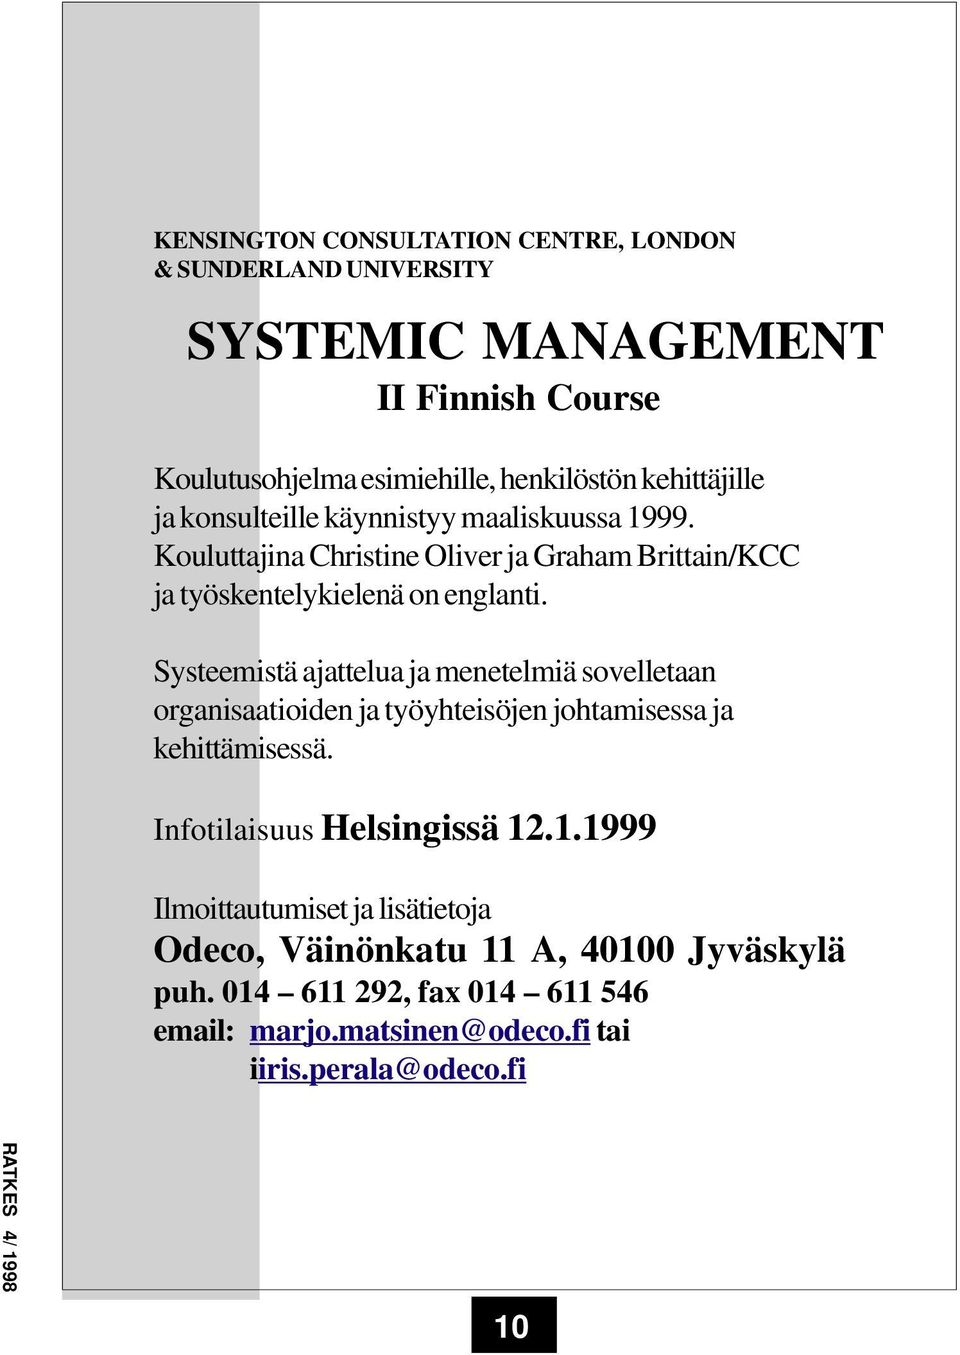 Systeemistä ajattelua ja menetelmiä sovelletaan organisaatioiden ja työyhteisöjen johtamisessa ja kehittämisessä. Infotilaisuus Helsingissä 12